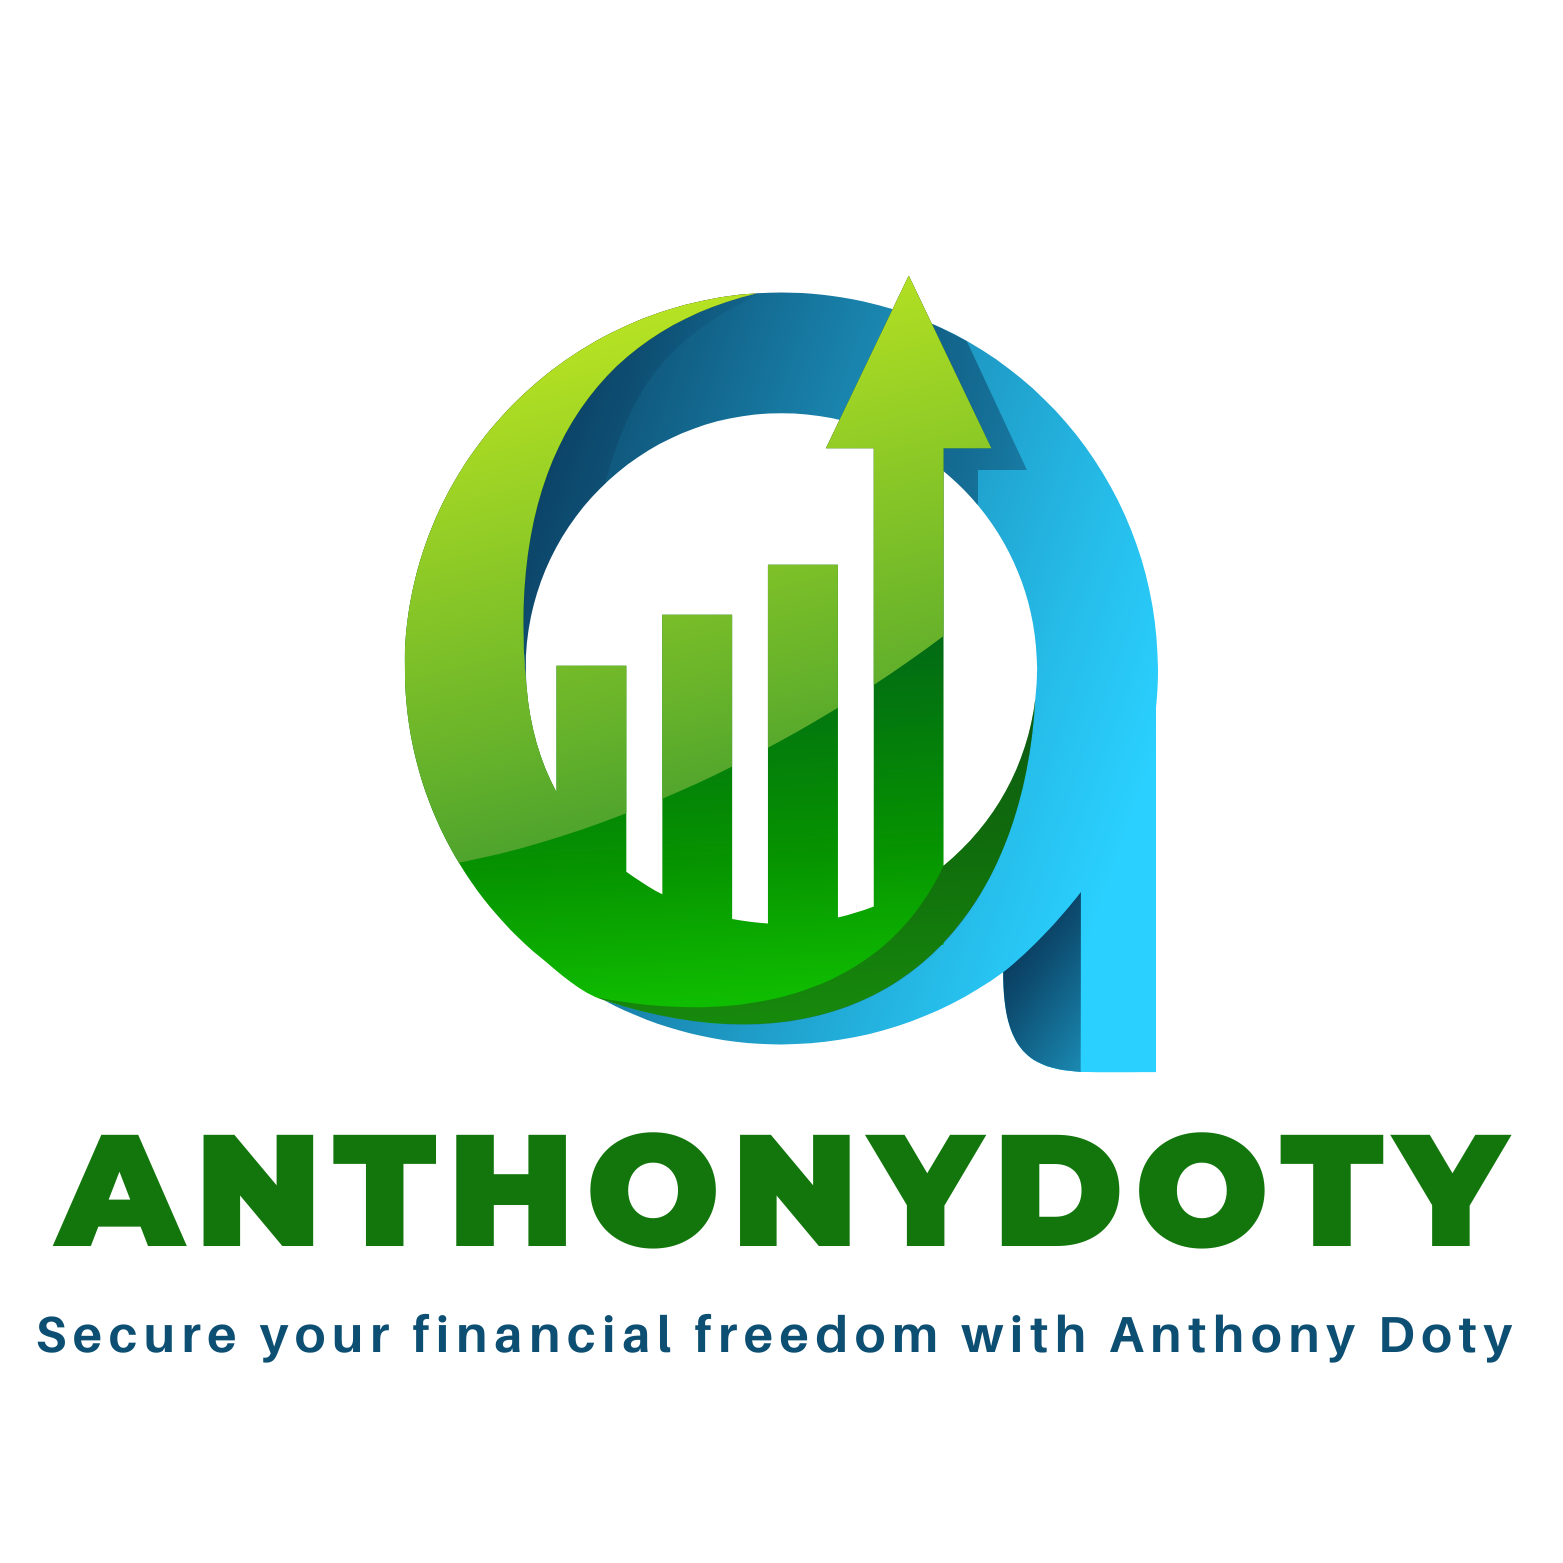 Anthony doty logo